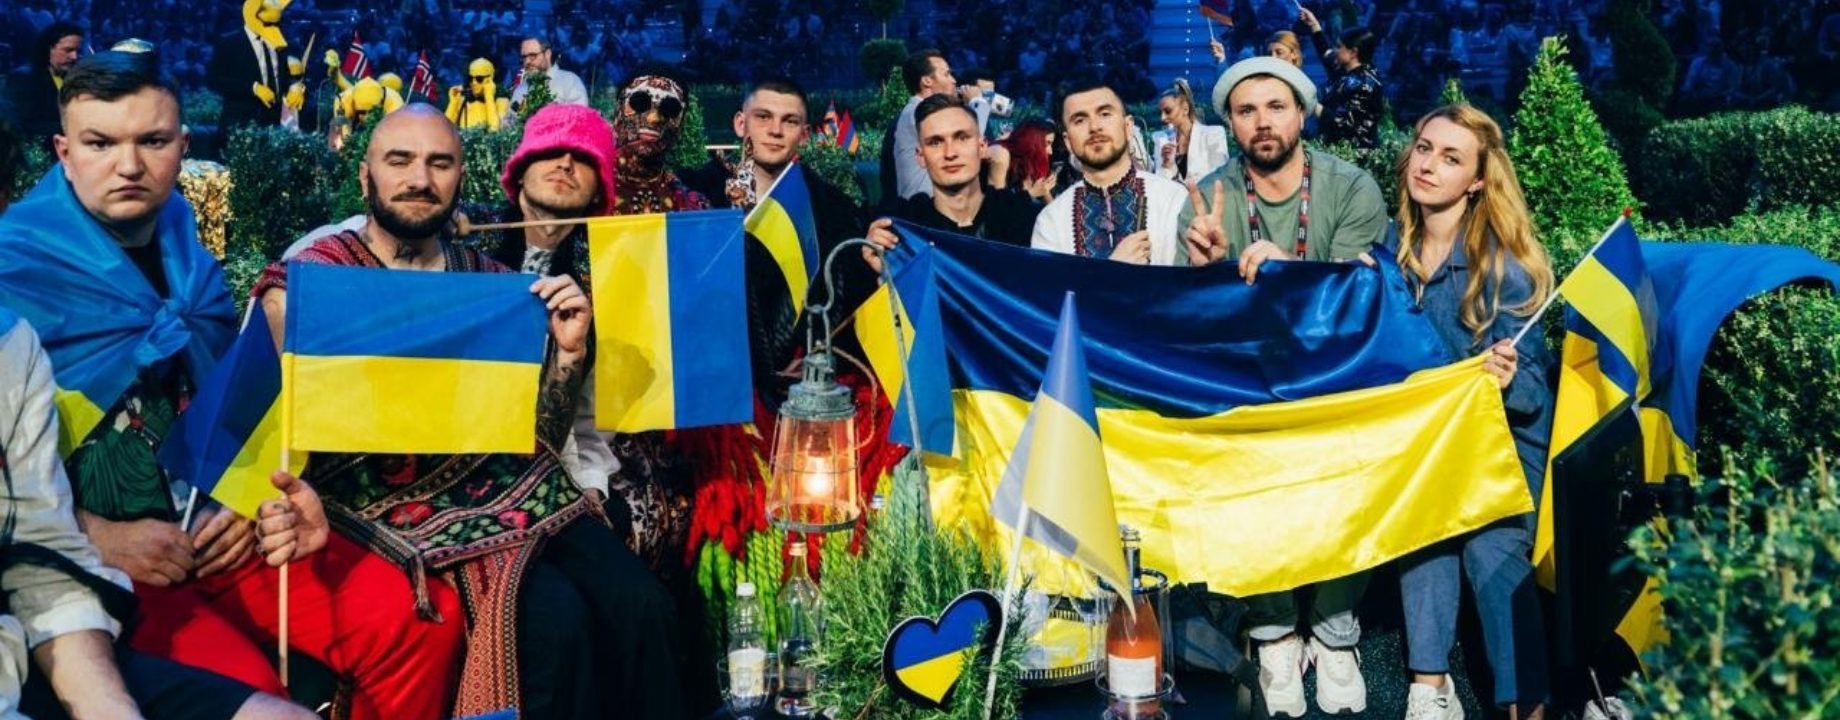 Eurovizio ukranok